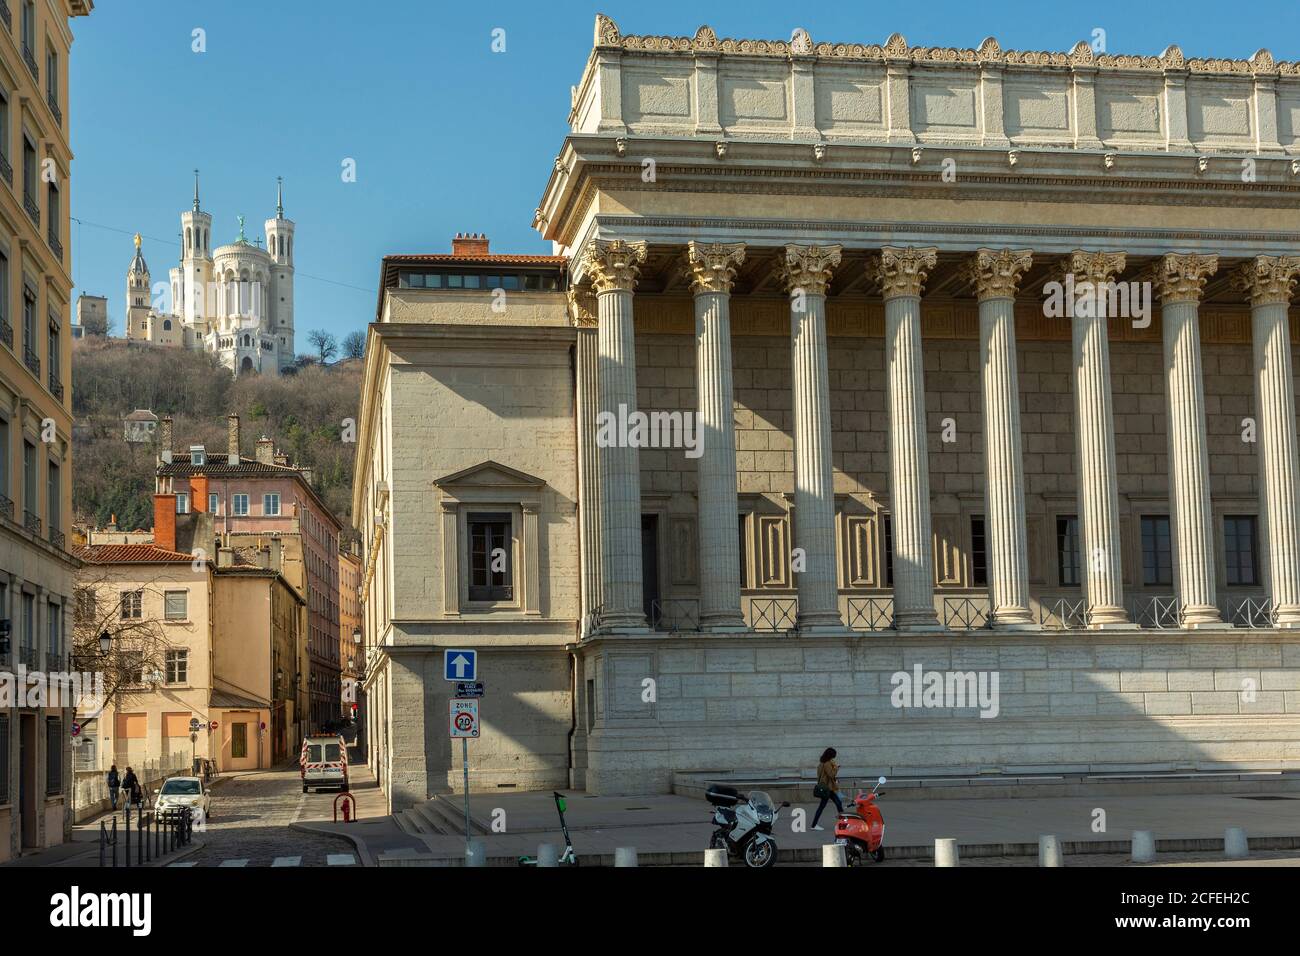 The Palais of justice and basilica of notre-dame de fourvière. Lyon, France Stock Photo